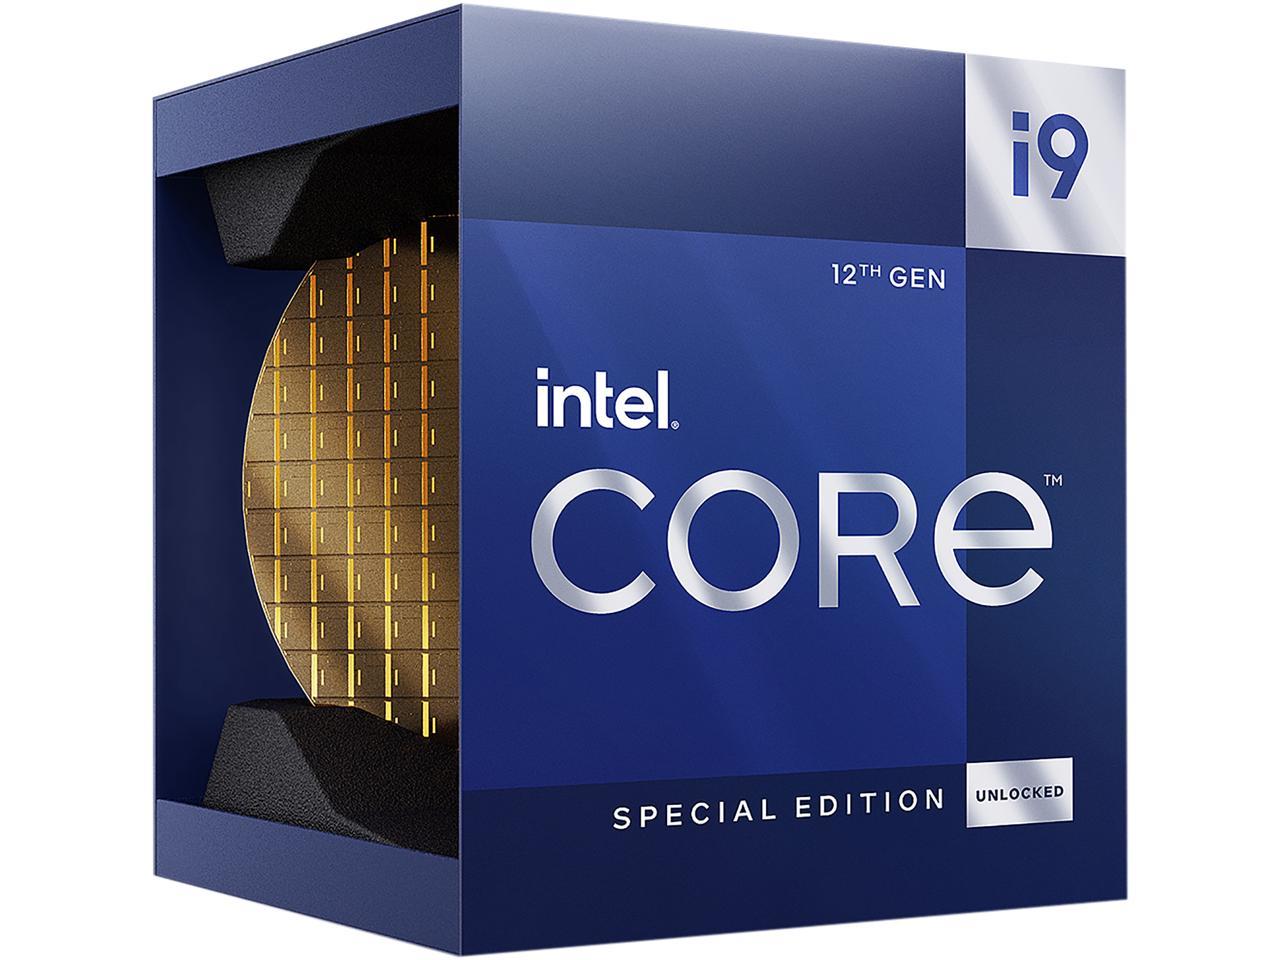 PC/タブレット PCパーツ Intel Core i9-12900KS、3DMark CPUベンチマークで最大15%高速化 